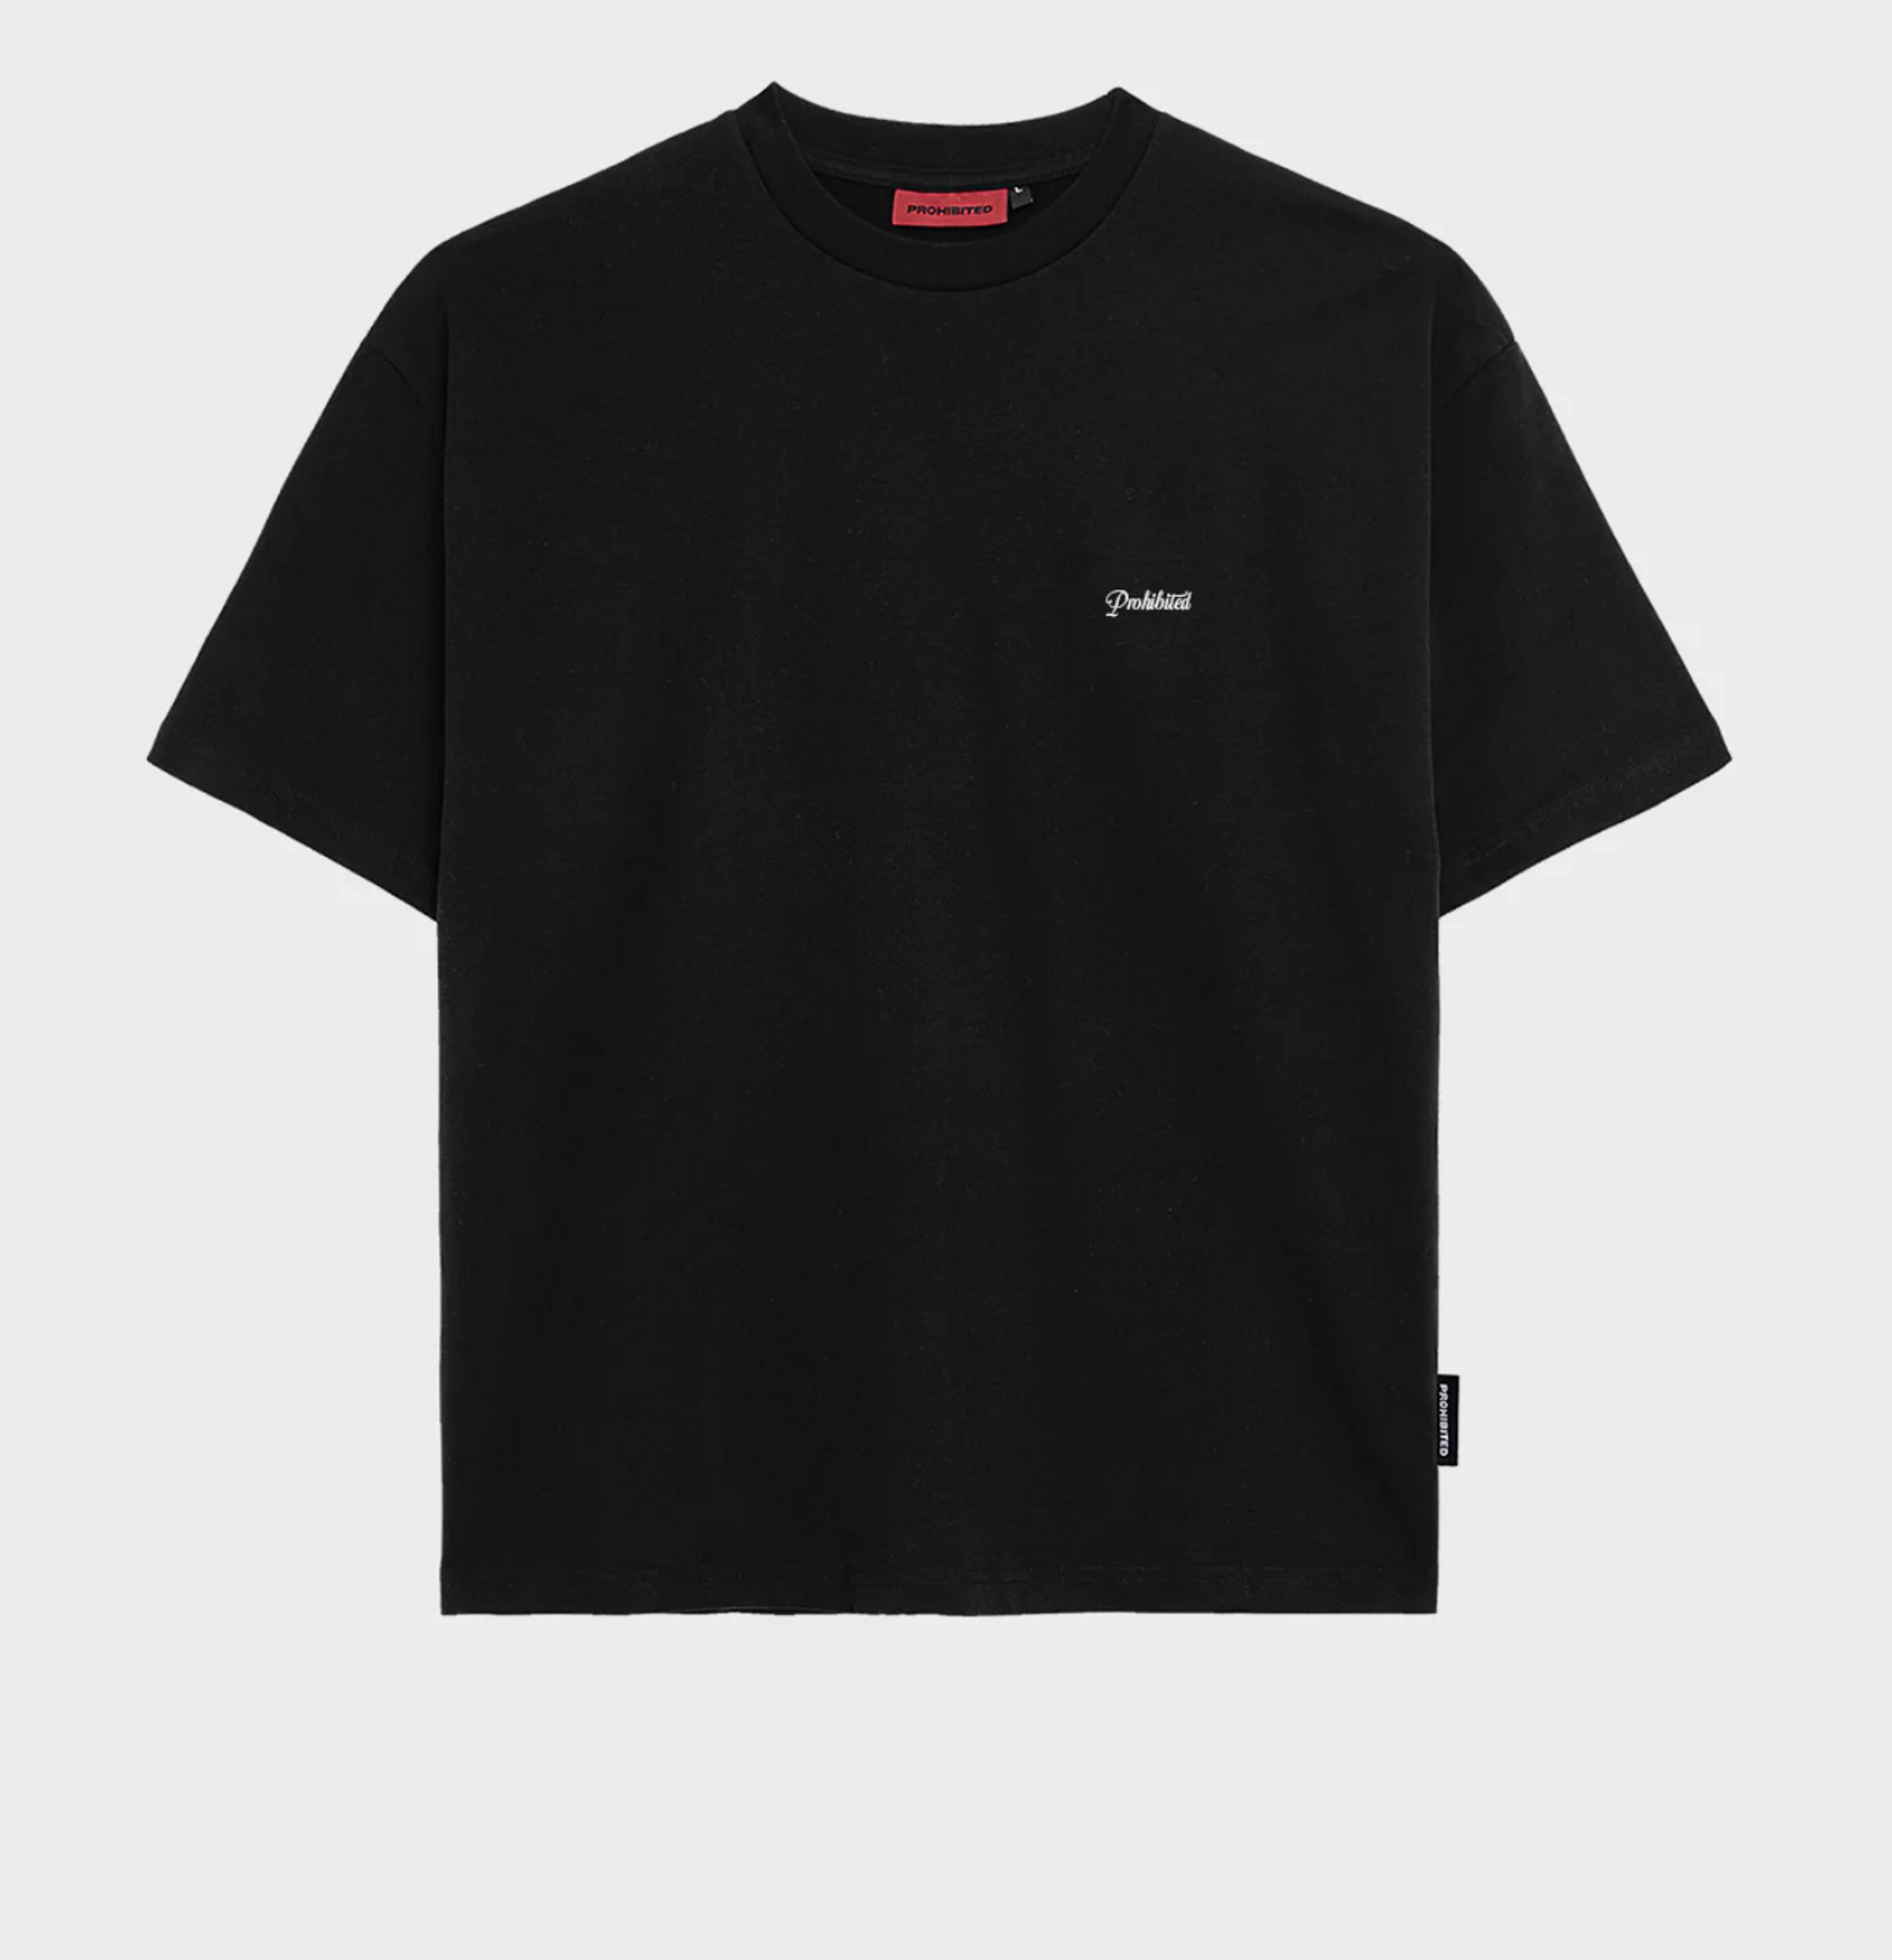  |  Prohibited Embroidery Unisex Oversized Shirt | S | black/white